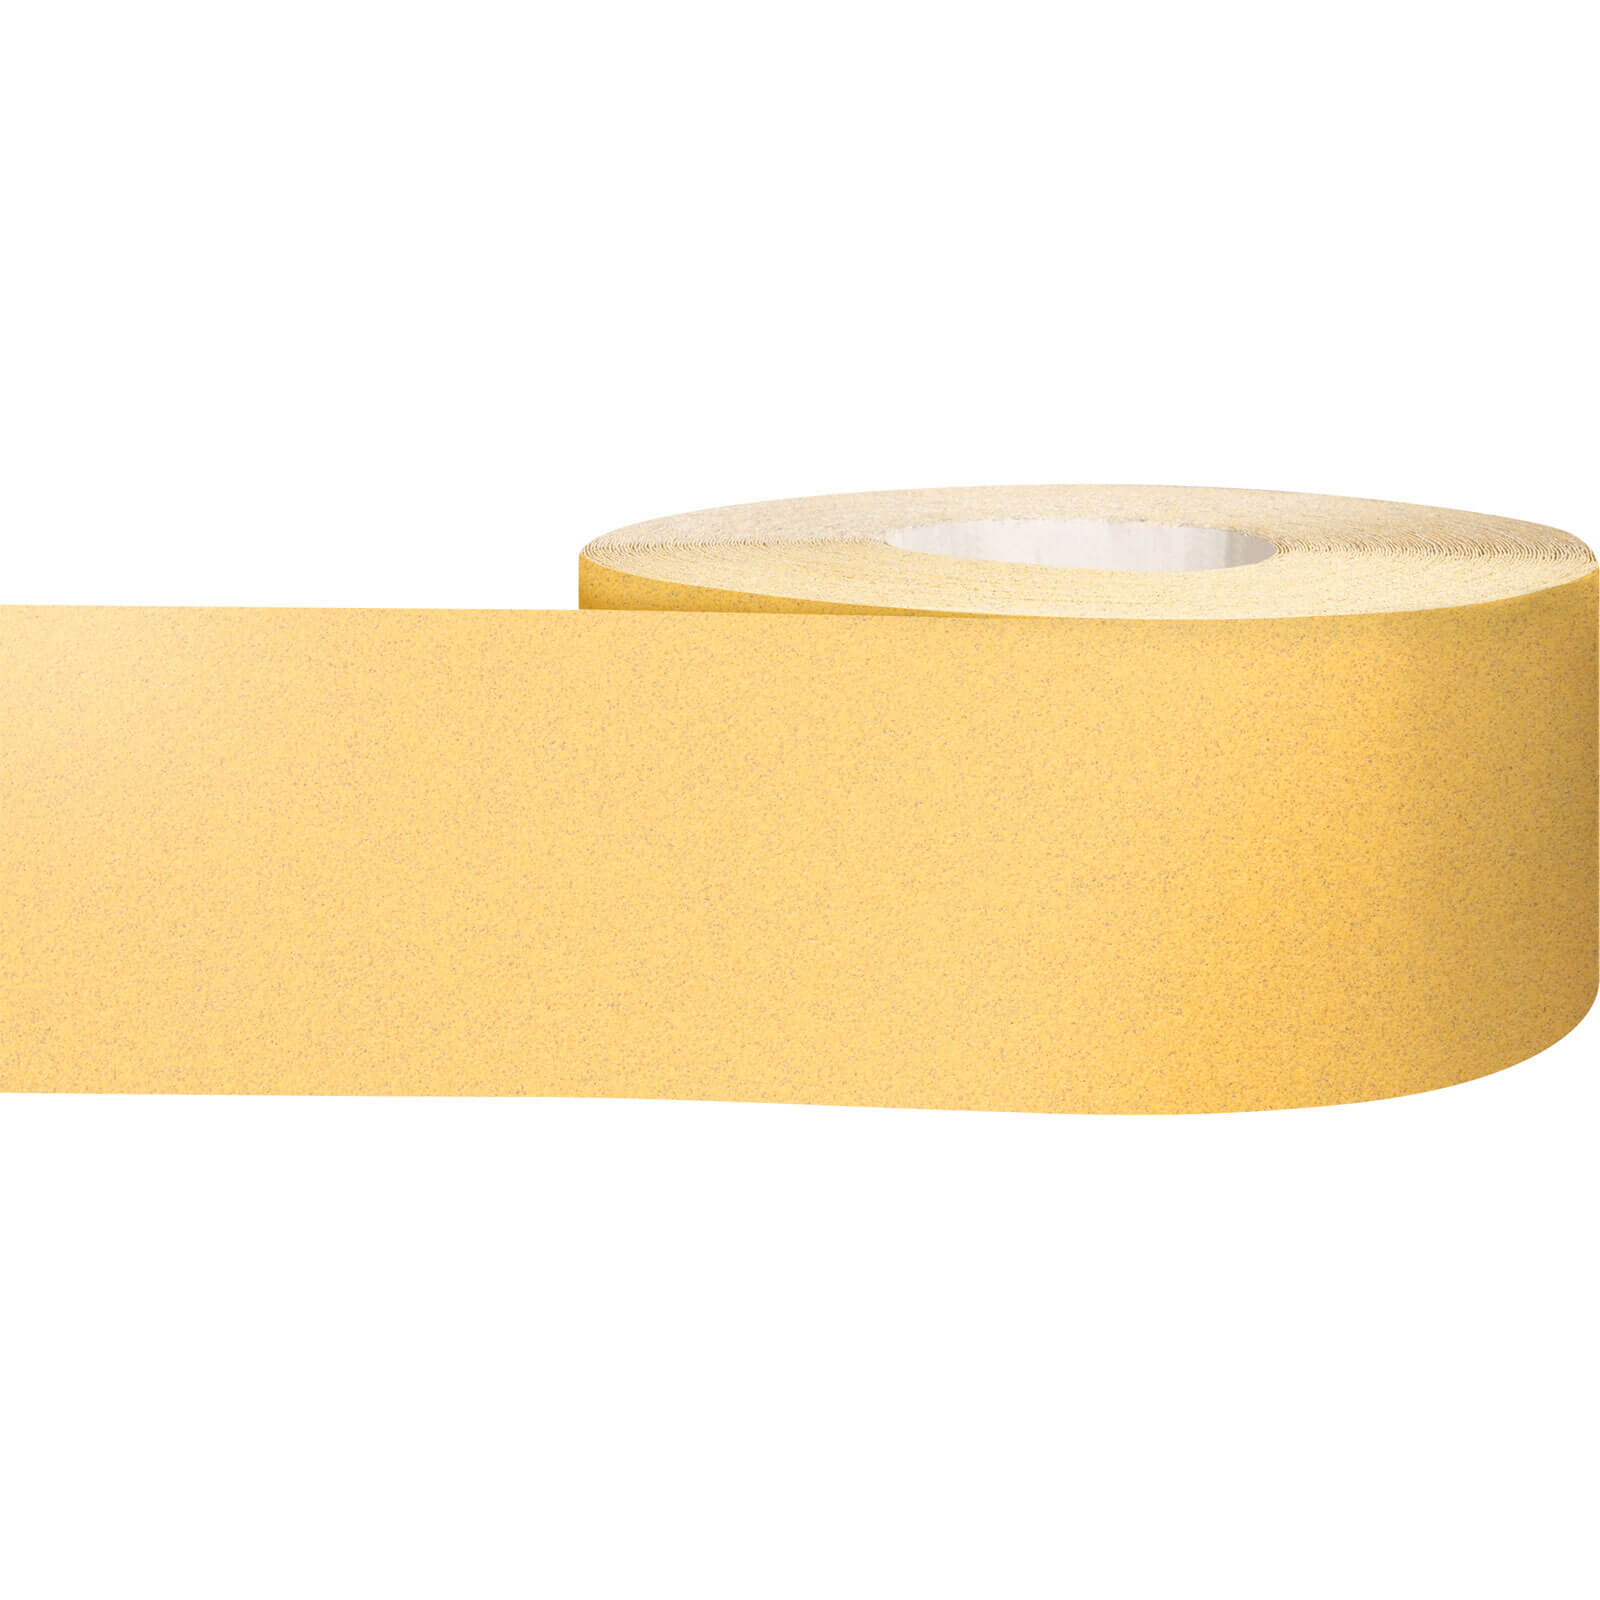 Photos - Abrasive Wheel / Belt Bosch Expert C470 Best for Wood and Paint Sanding Roll 115mm 50m 100g 2608 